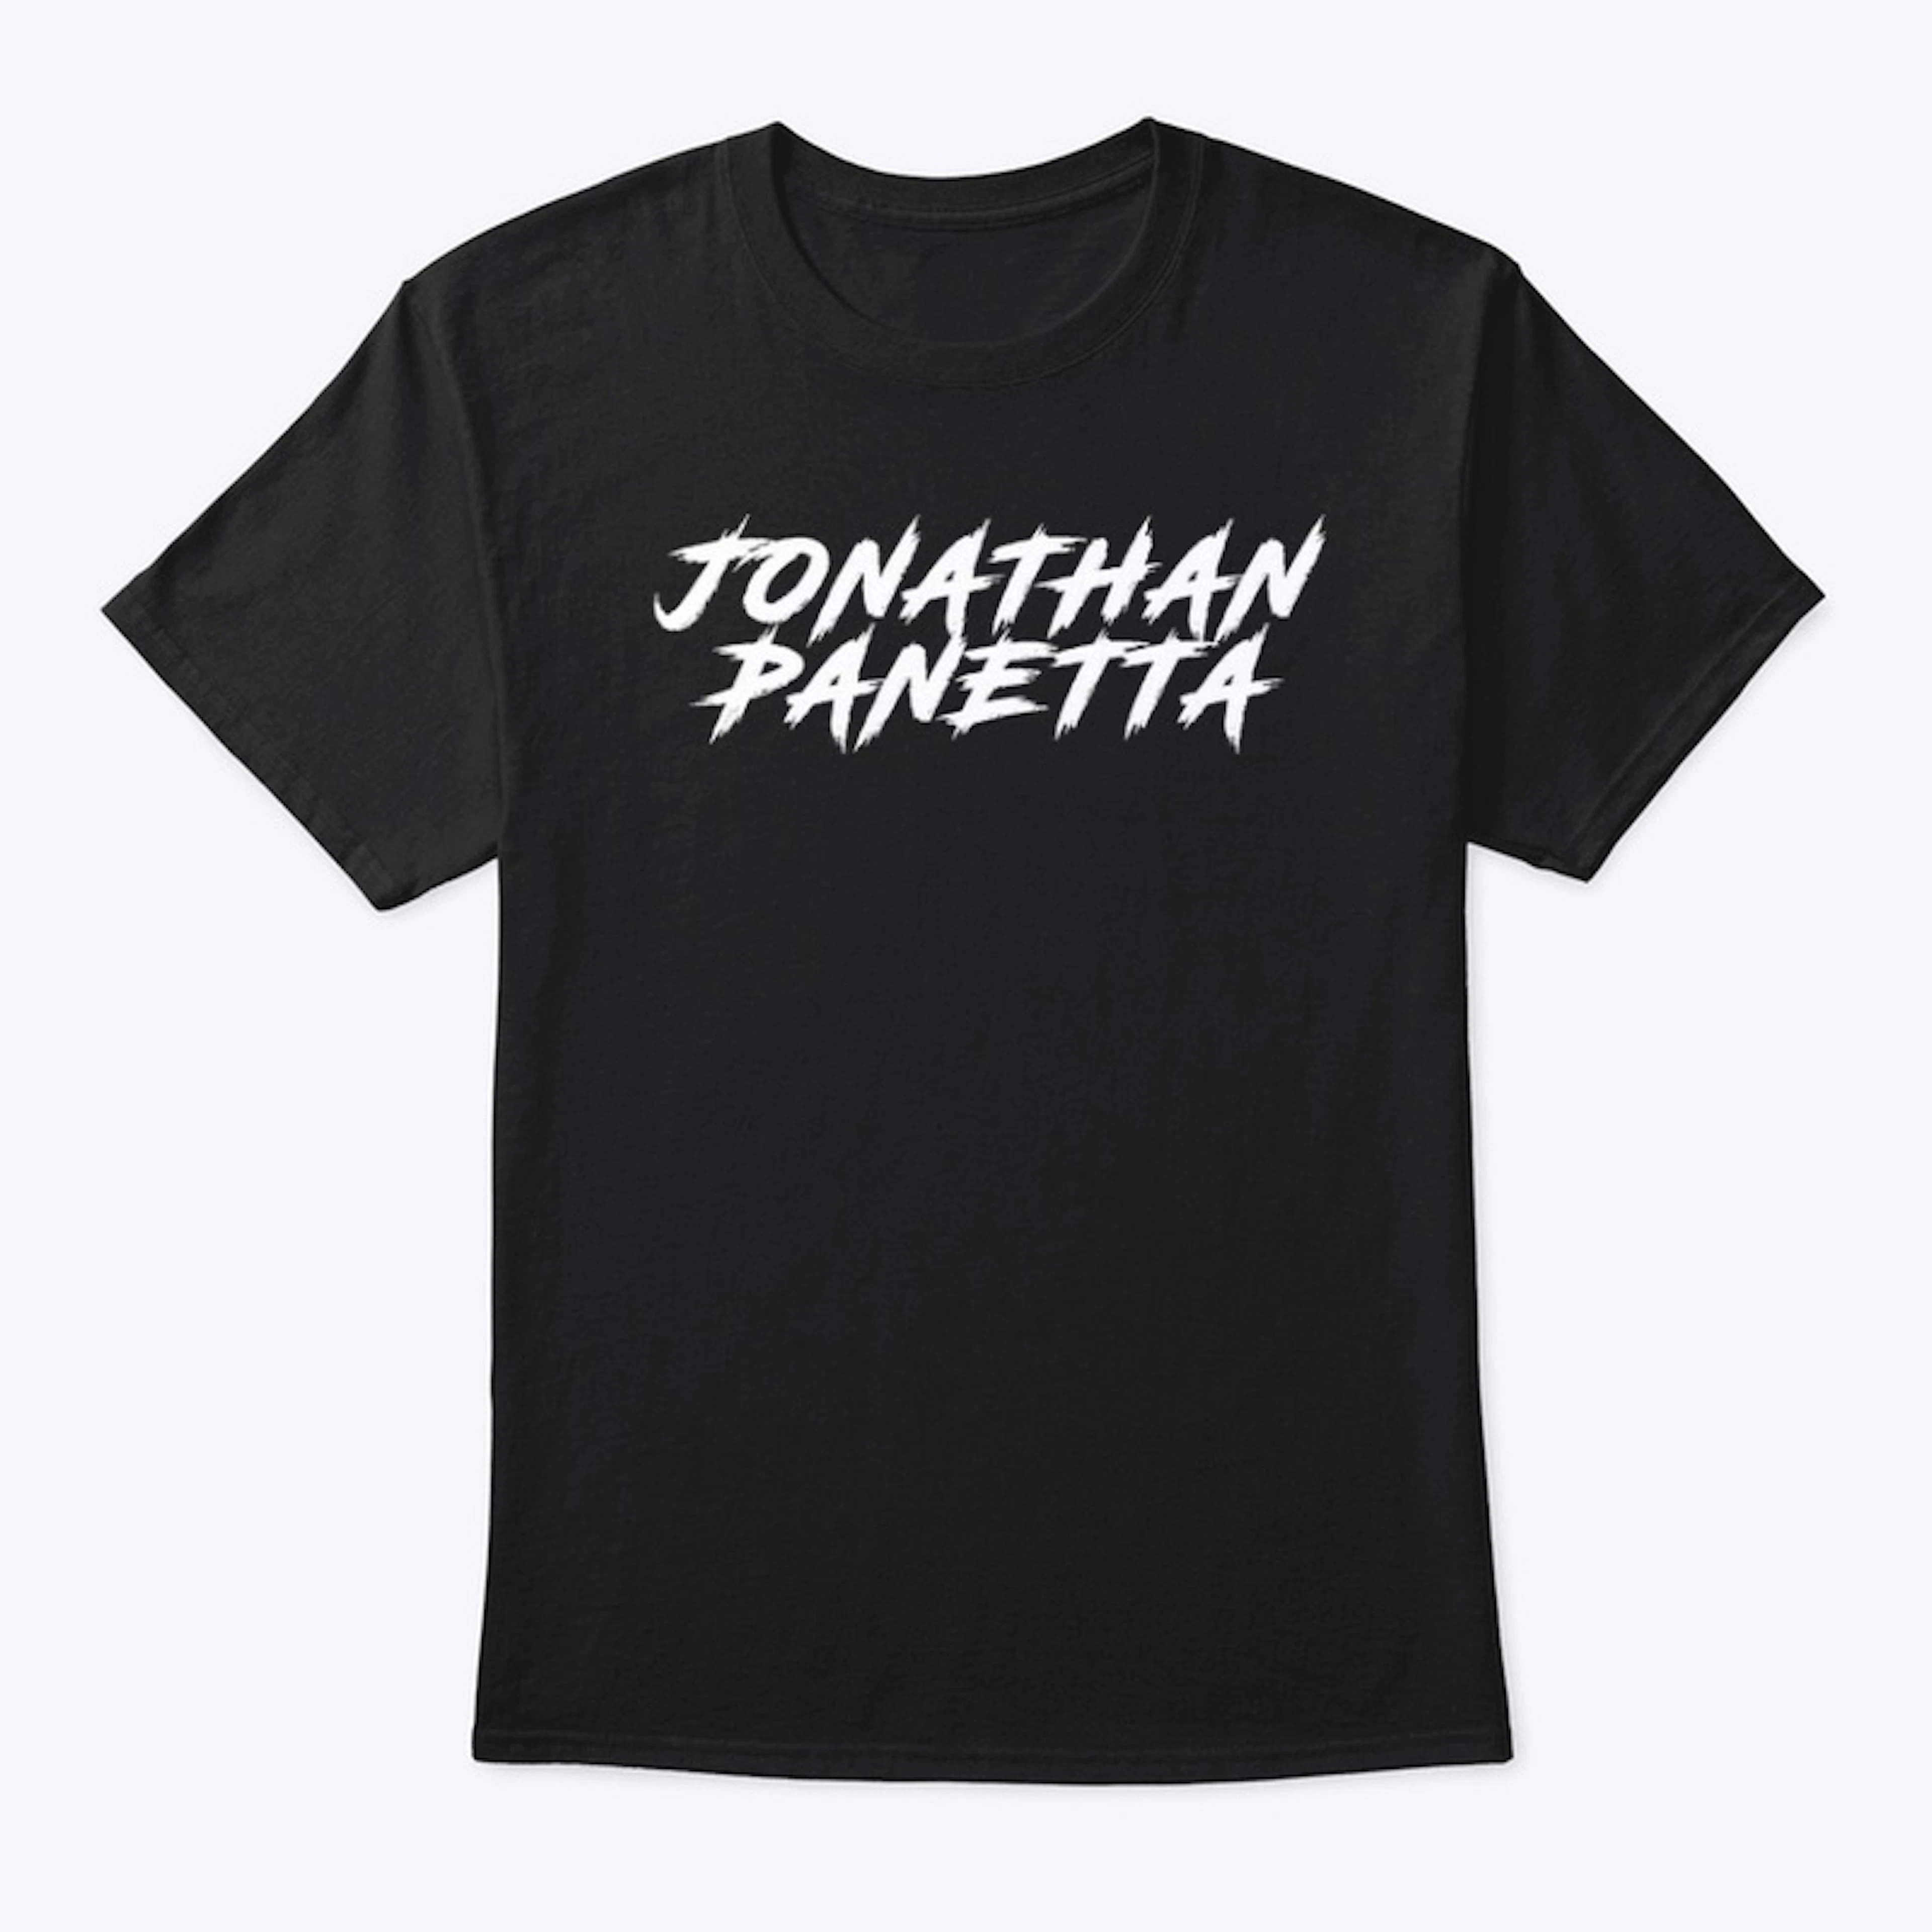 Jonathan Panetta White logo T Shirt 